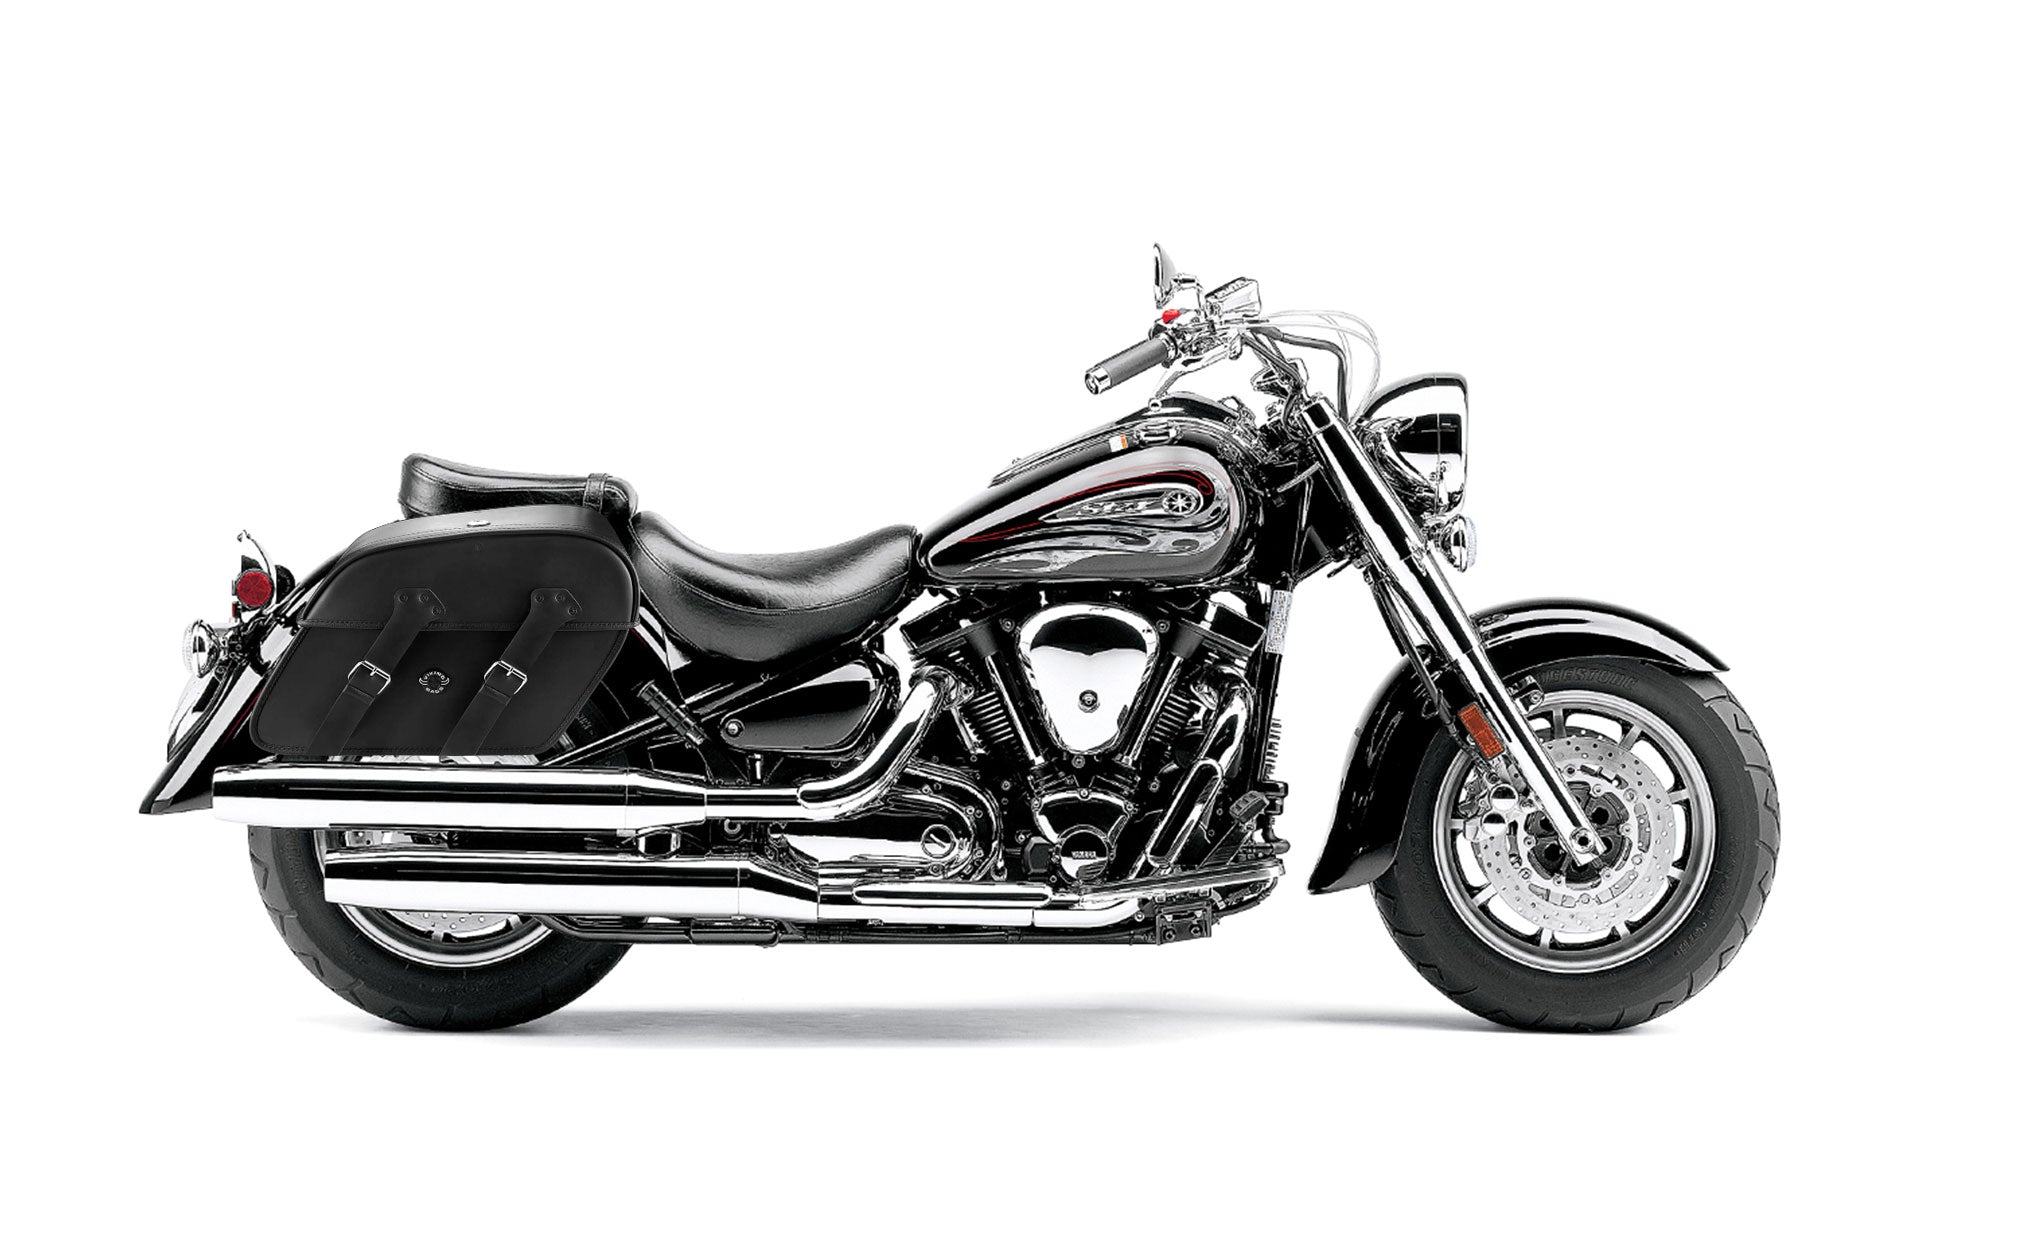 Viking Raven Extra Large Yamaha Road Star S Midnight Leather Motorcycle Saddlebags on Bike Photo @expand